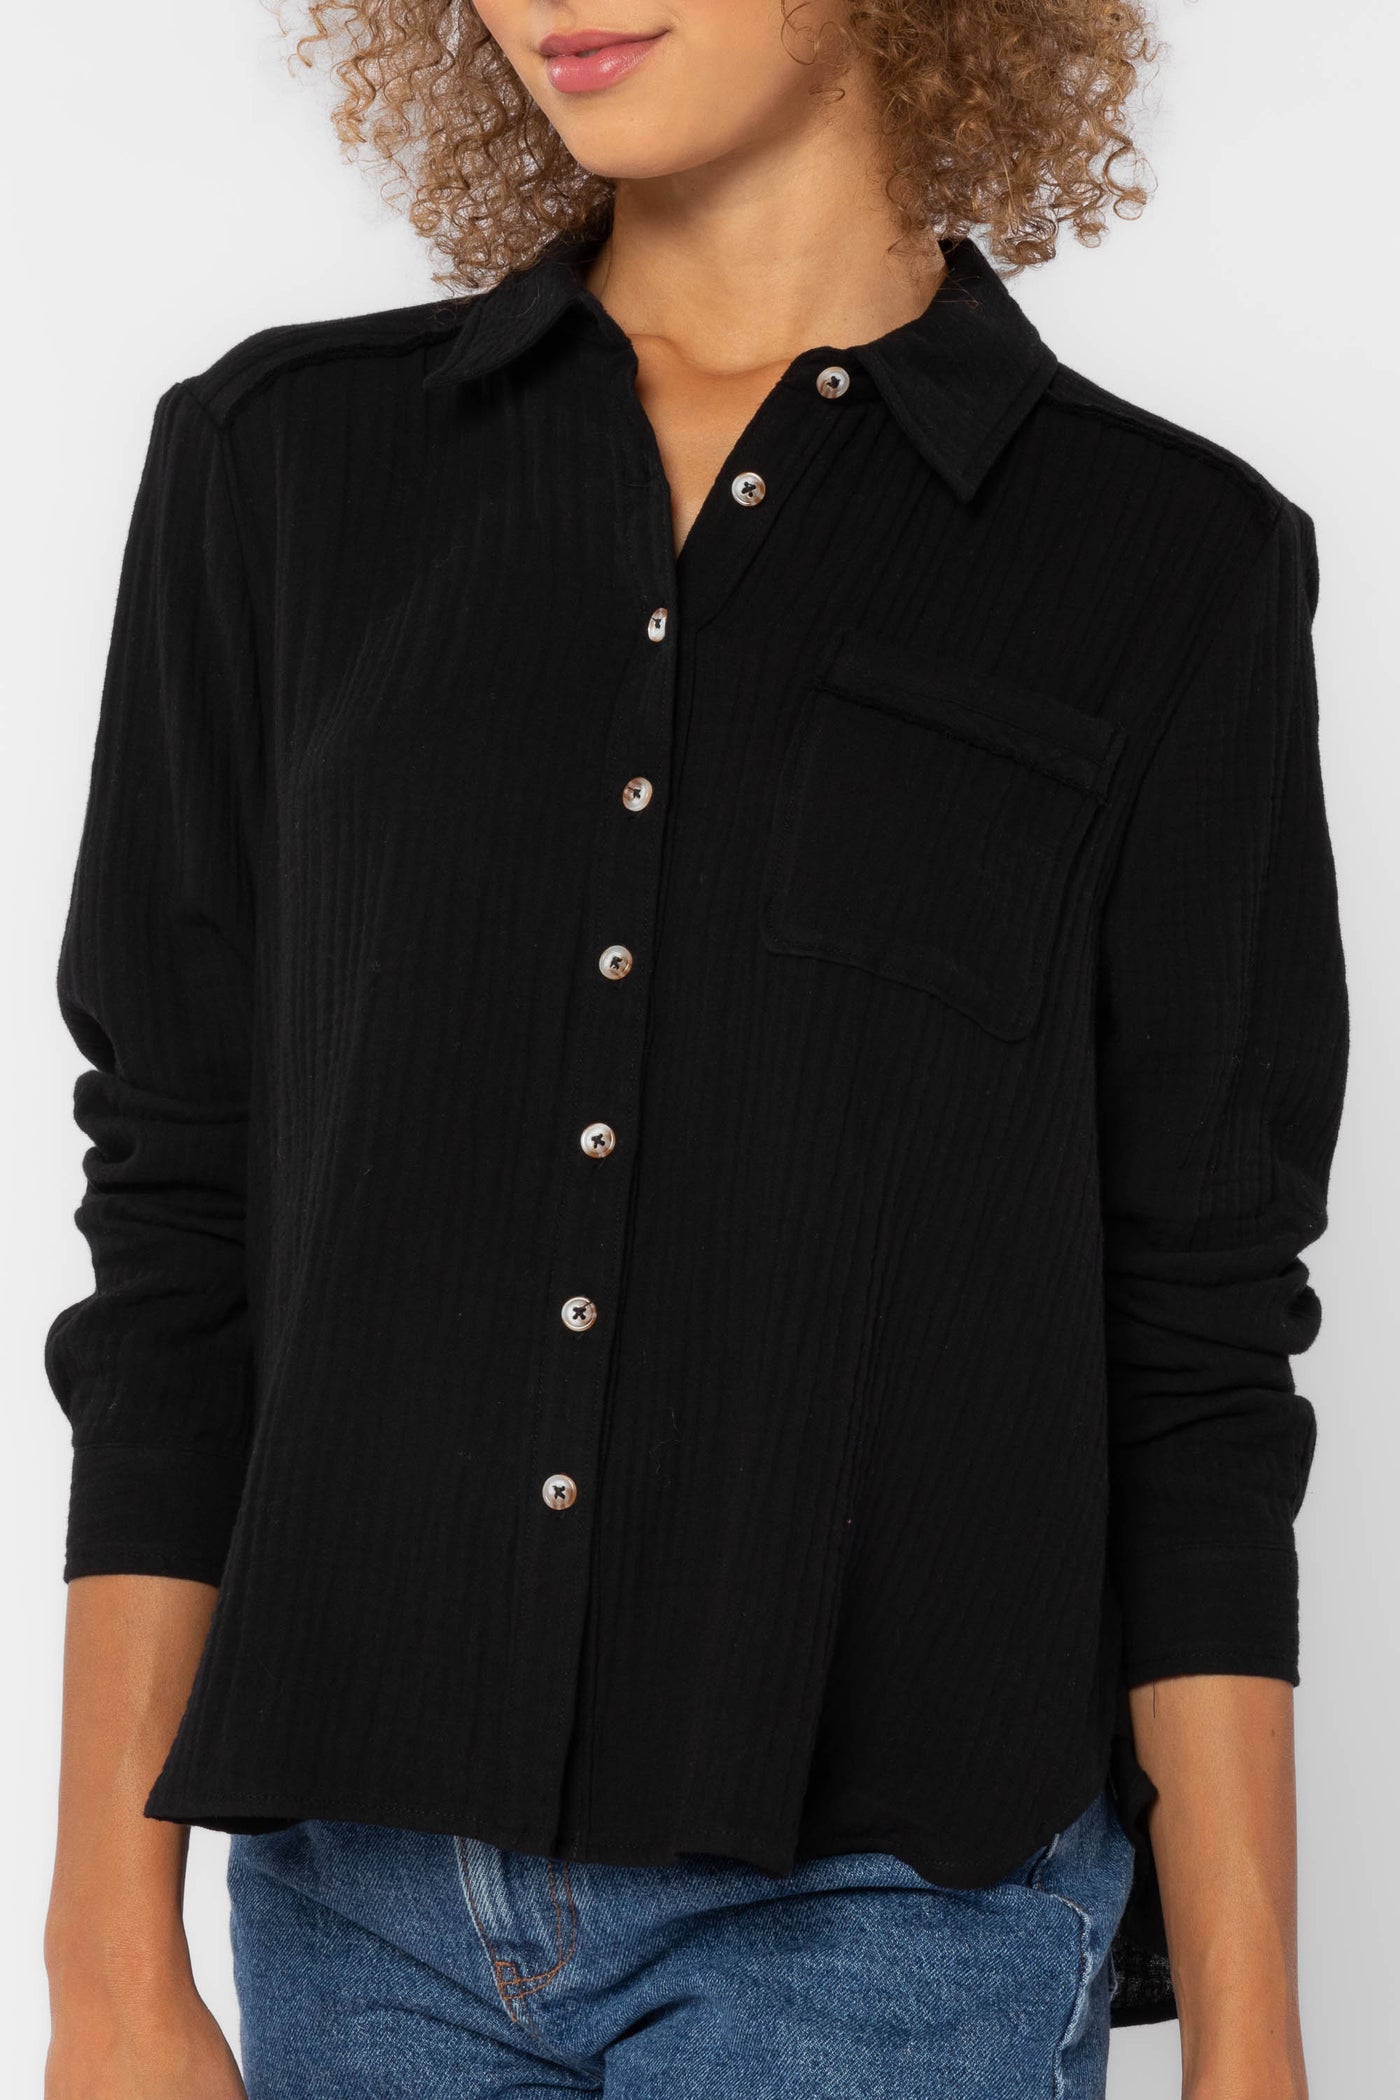 Chelsea Black Shirt - Tops - Velvet Heart Clothing